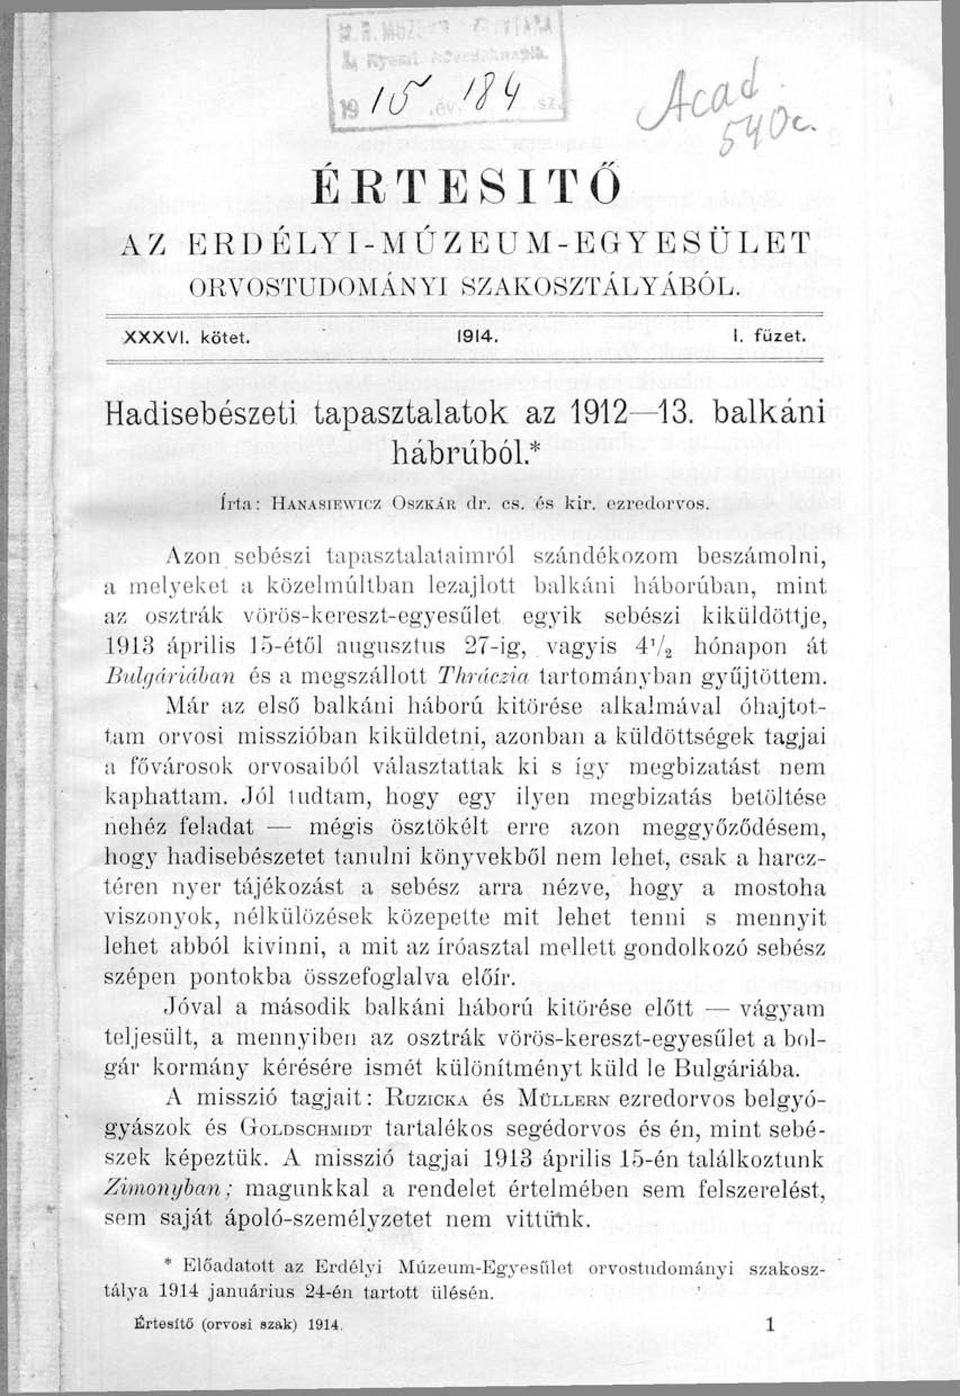 00- ÉRTESÍTŐ Azon sebészi tapasztalataimról szándékozom beszámolni, a melyeket a közelmúltban lezajlott balkáni háborúban, mint az osztrák vörös-kereszt-egyesűlet egyik sebészi kiküldöttje, 1913